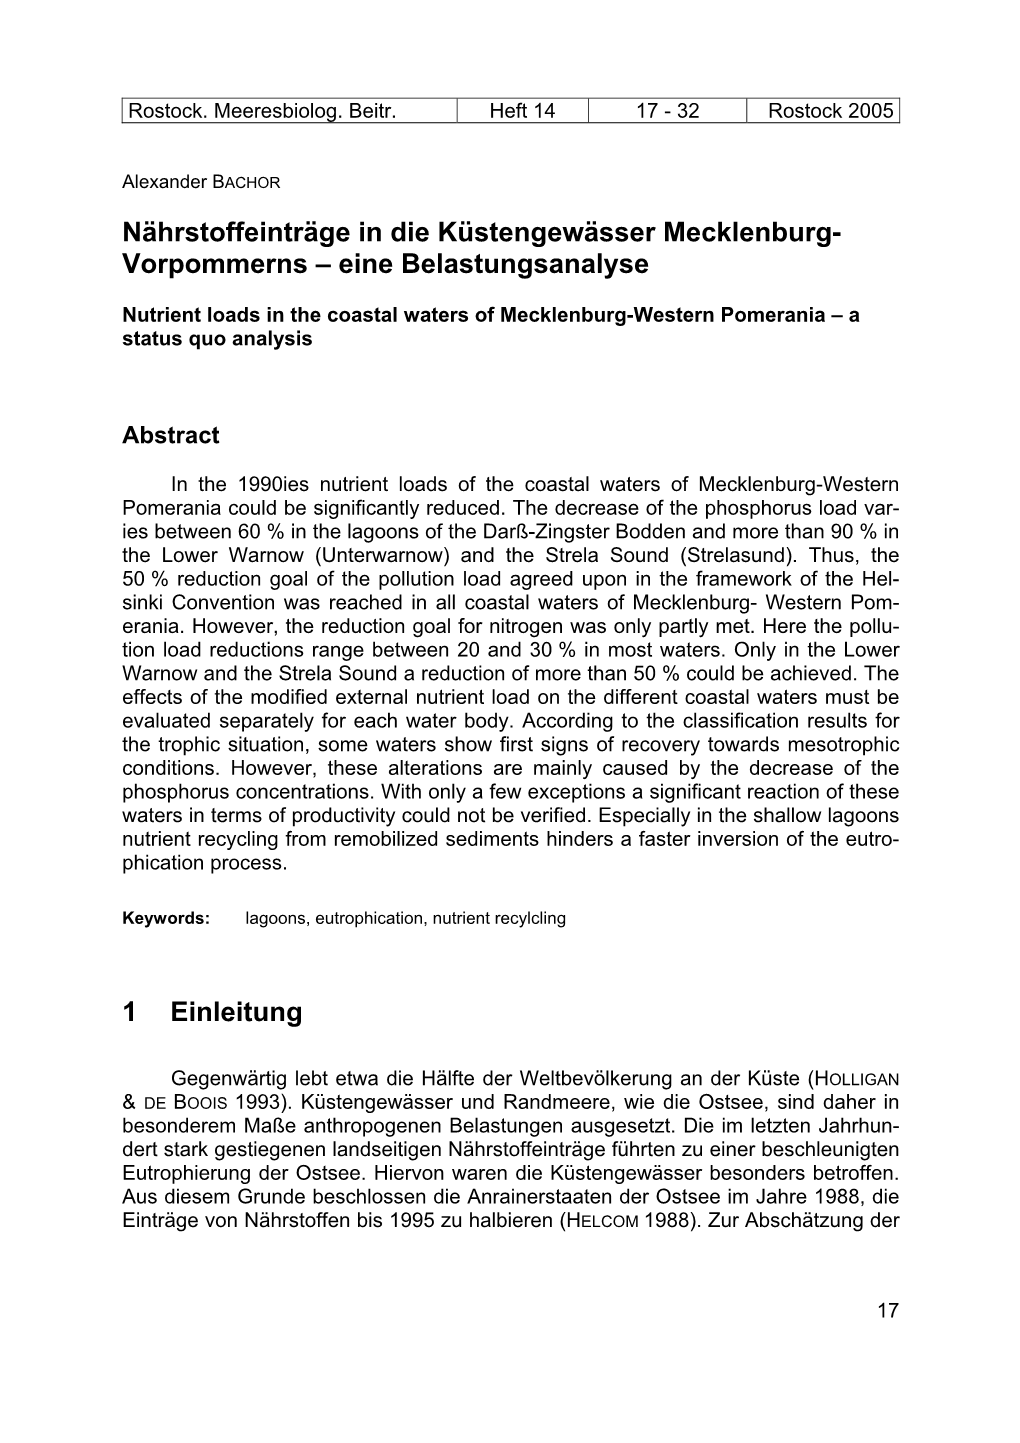 Nährstoffeinträge in Die Küstengewässer Mecklenburg- Vorpommerns – Eine Belastungsanalyse